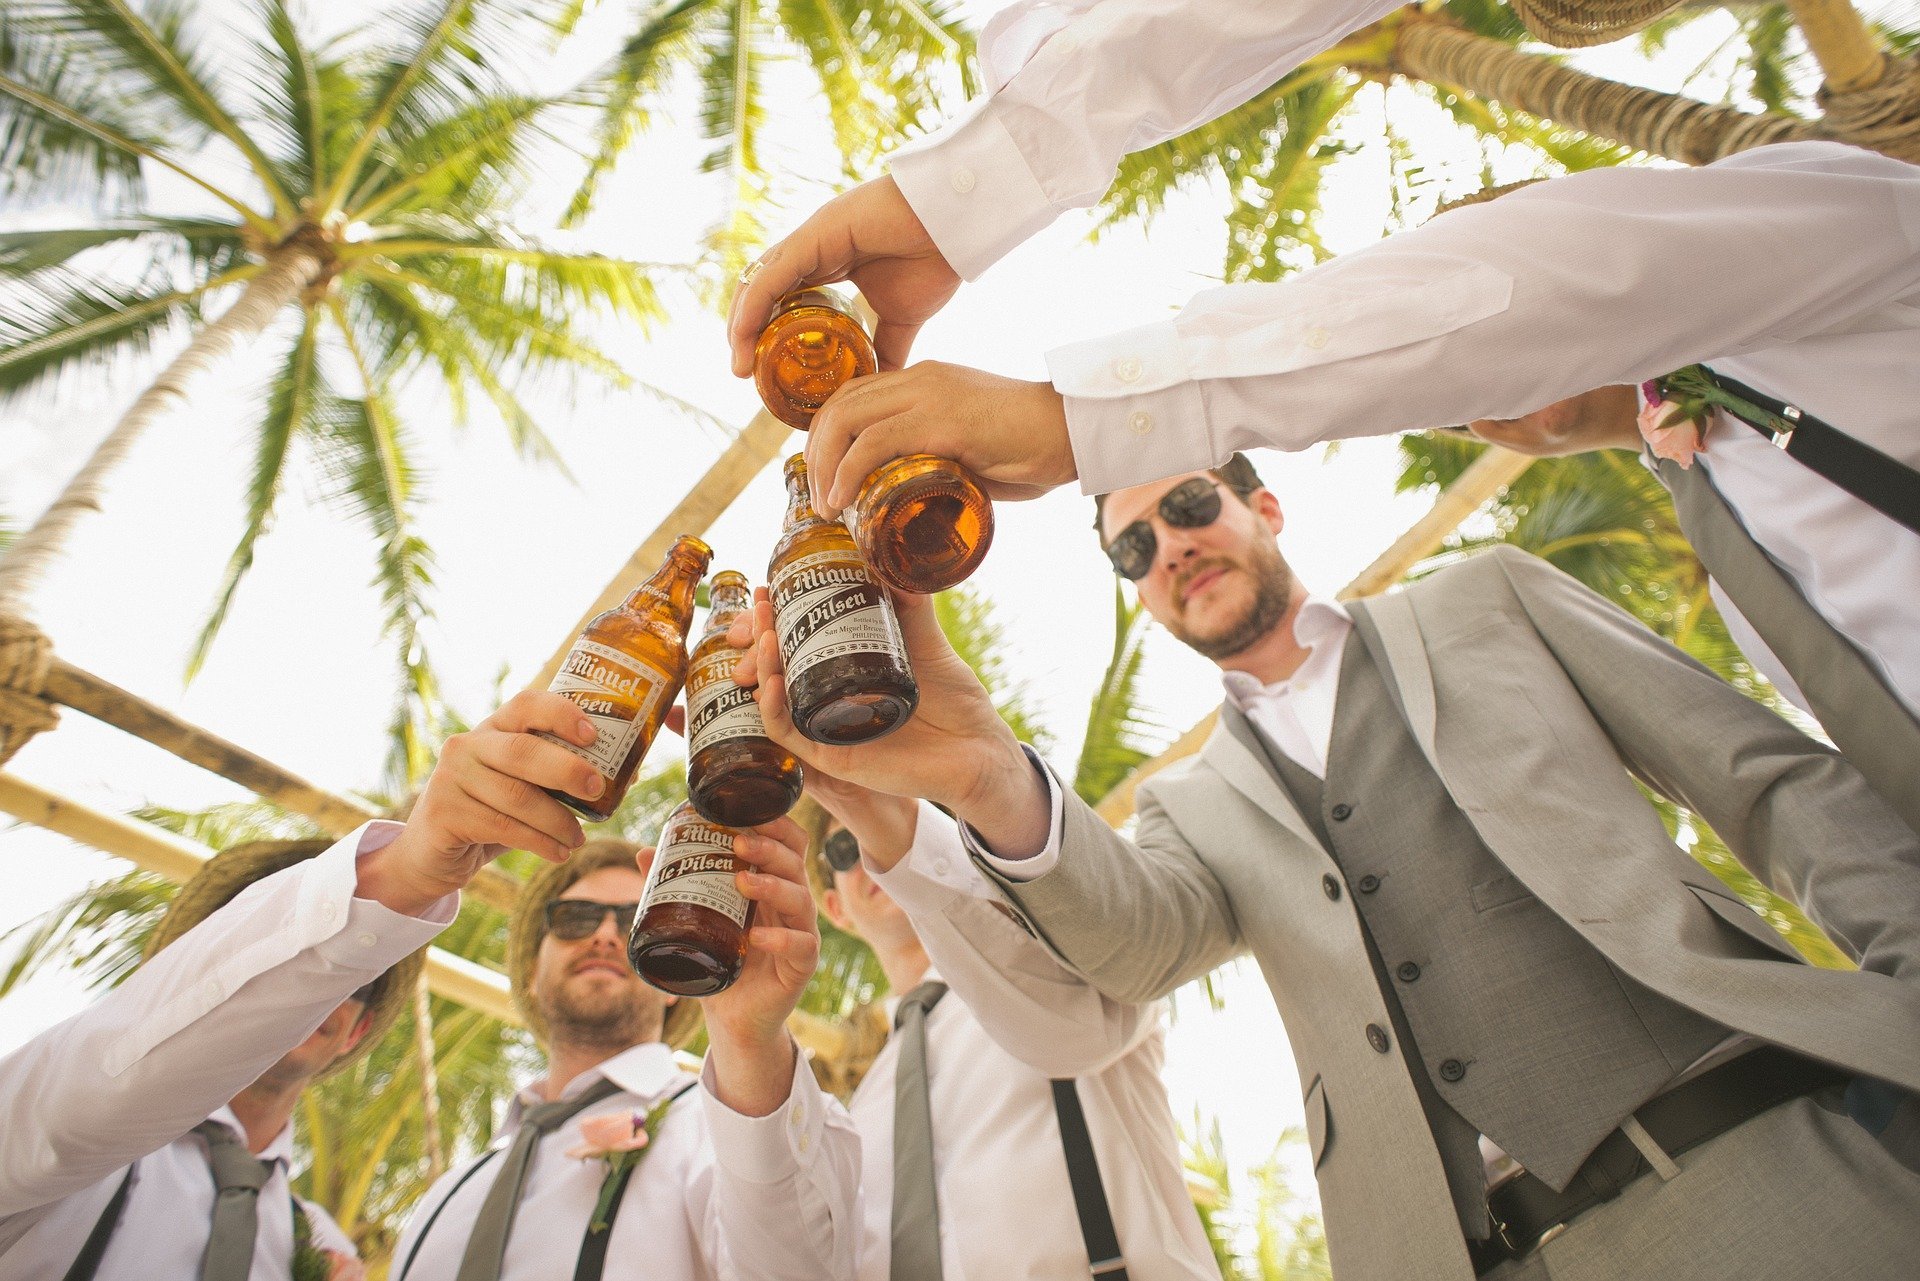 Men clinking beer bottles together. | Source: Pexels/Pixabay